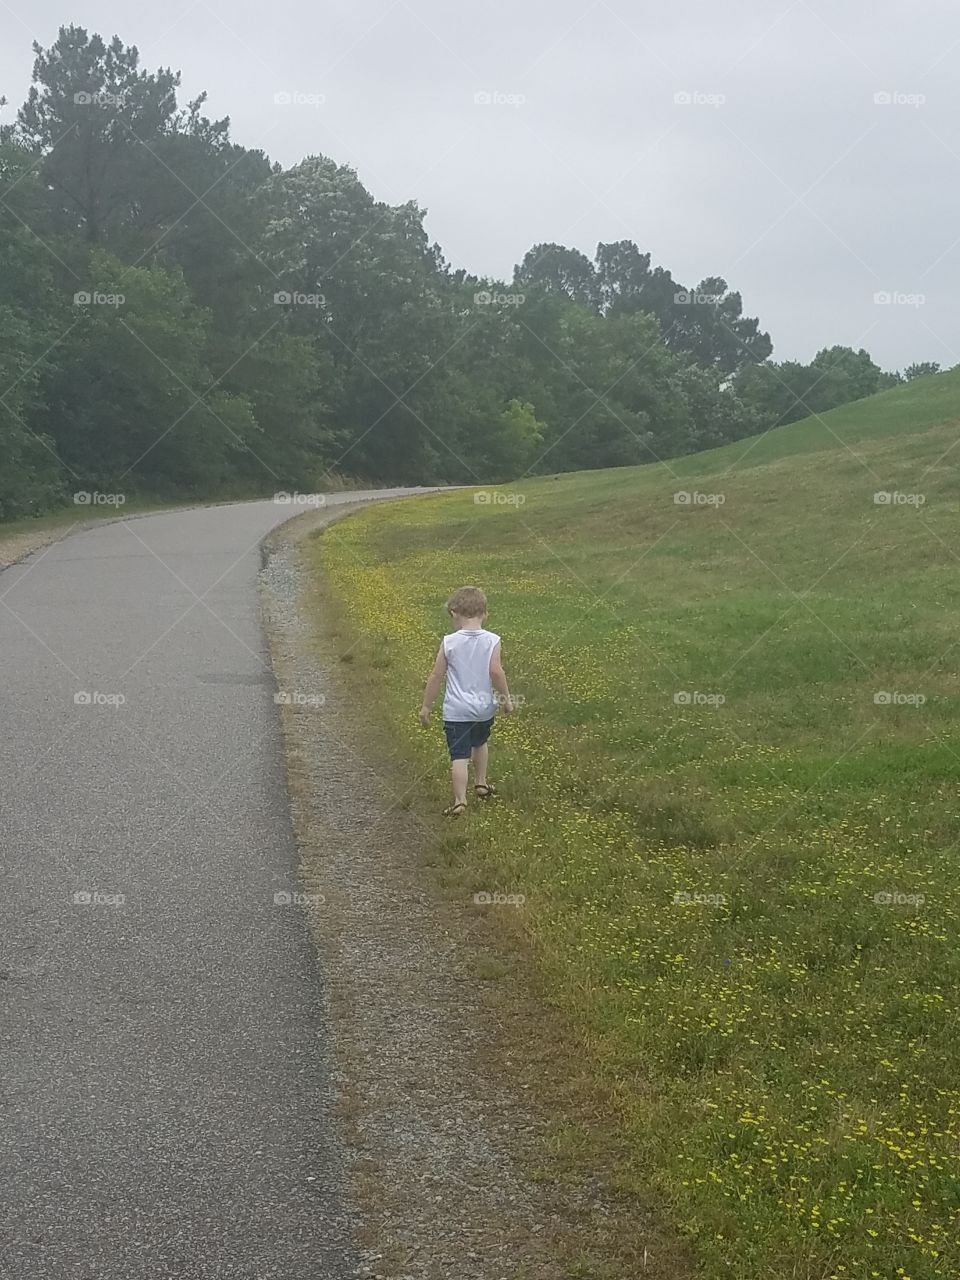 boy walking alongside a road